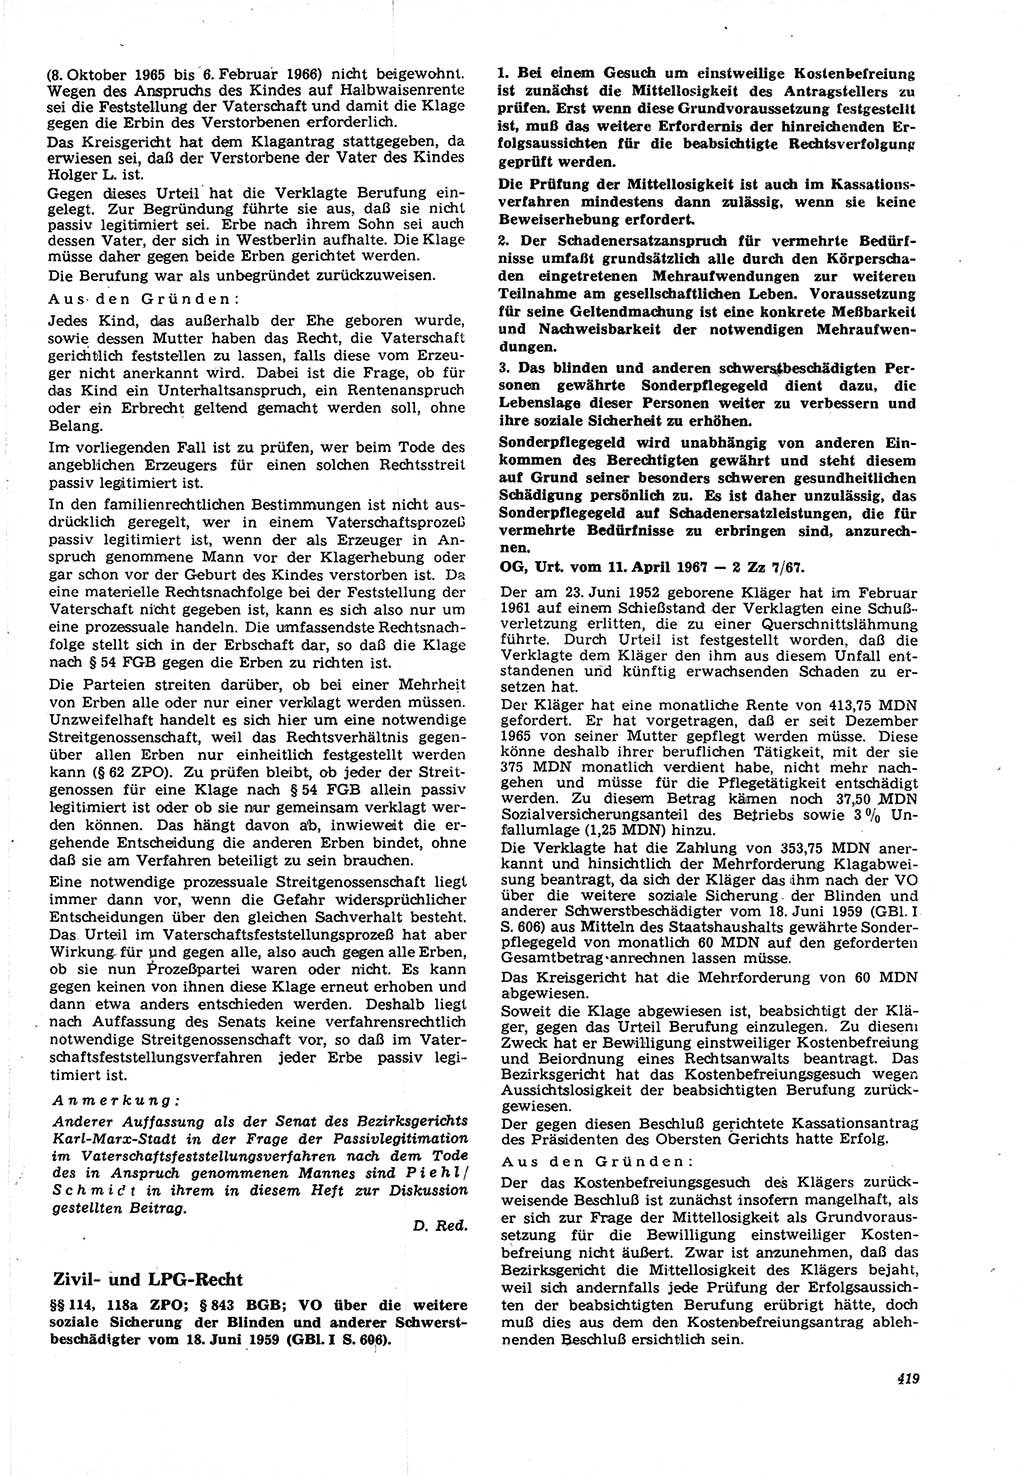 Neue Justiz (NJ), Zeitschrift für Recht und Rechtswissenschaft [Deutsche Demokratische Republik (DDR)], 21. Jahrgang 1967, Seite 419 (NJ DDR 1967, S. 419)